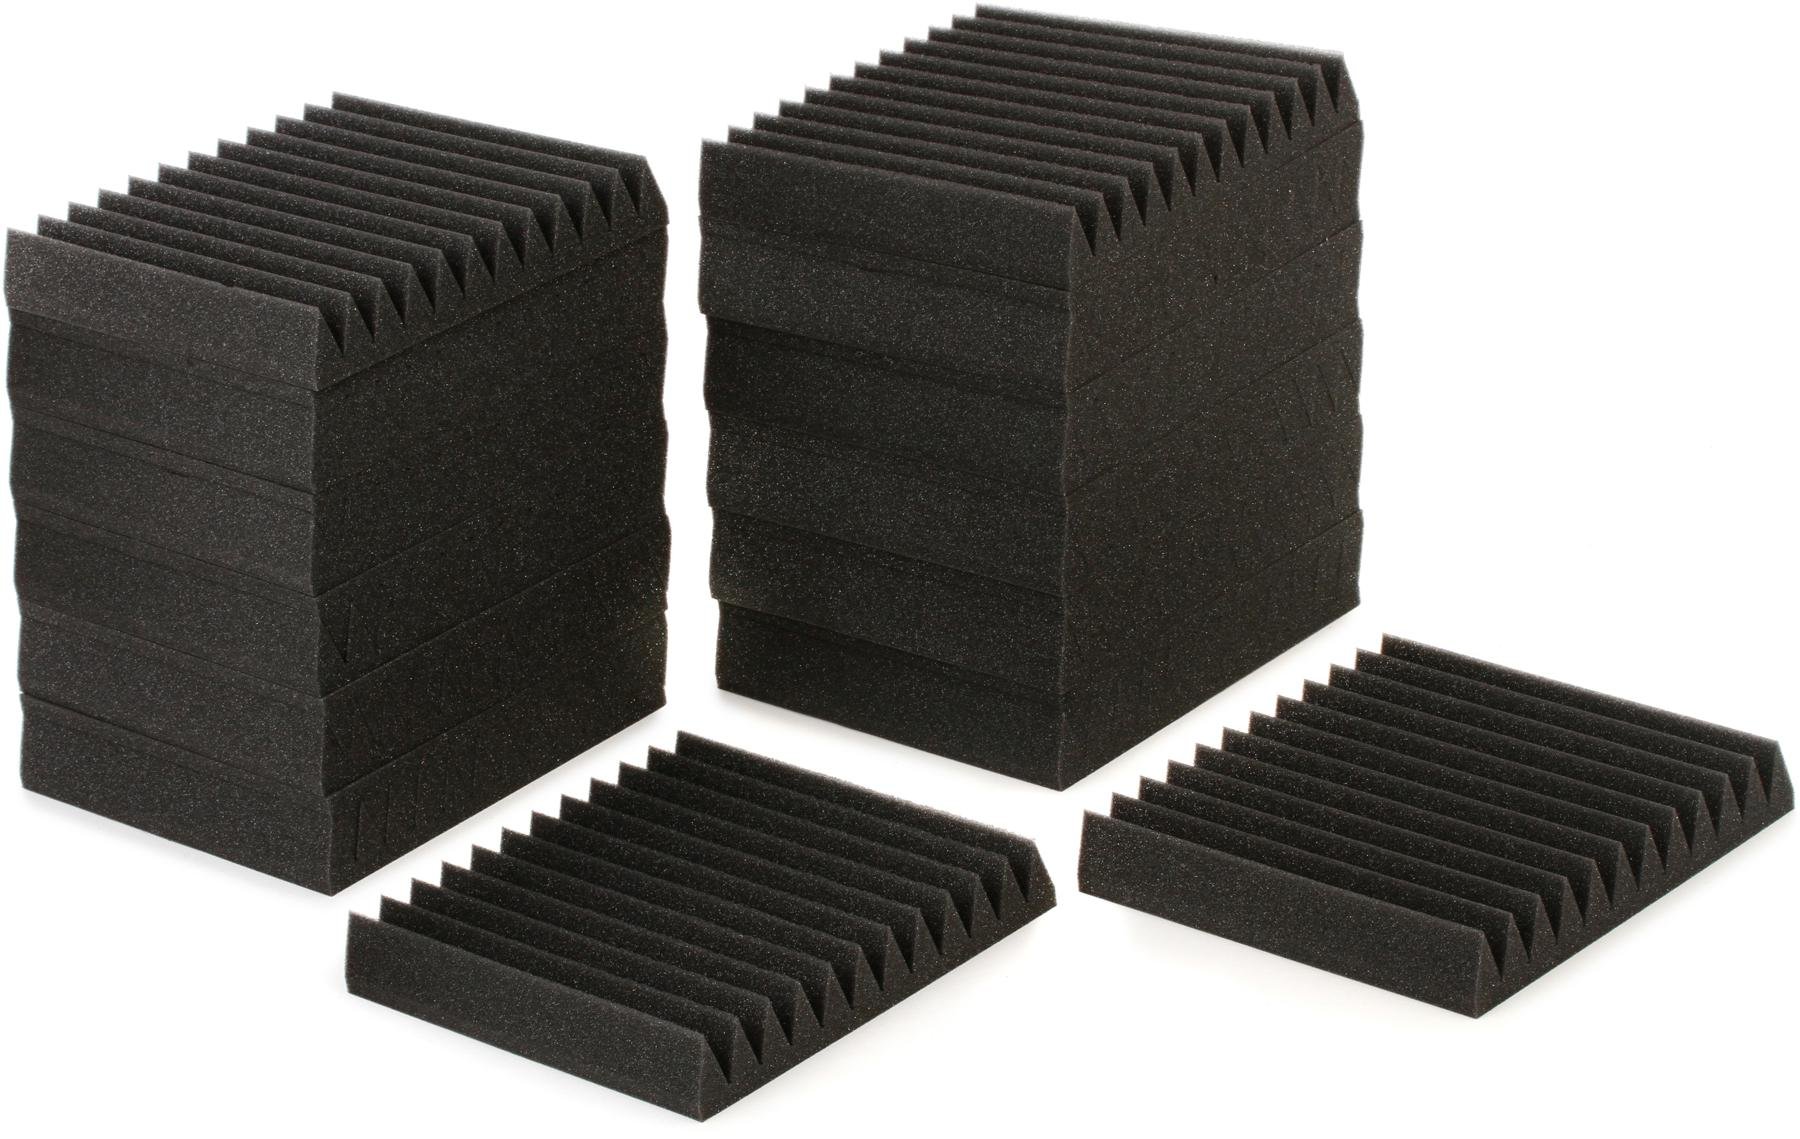 Auralex Acoustic Foam panels (24 pack)